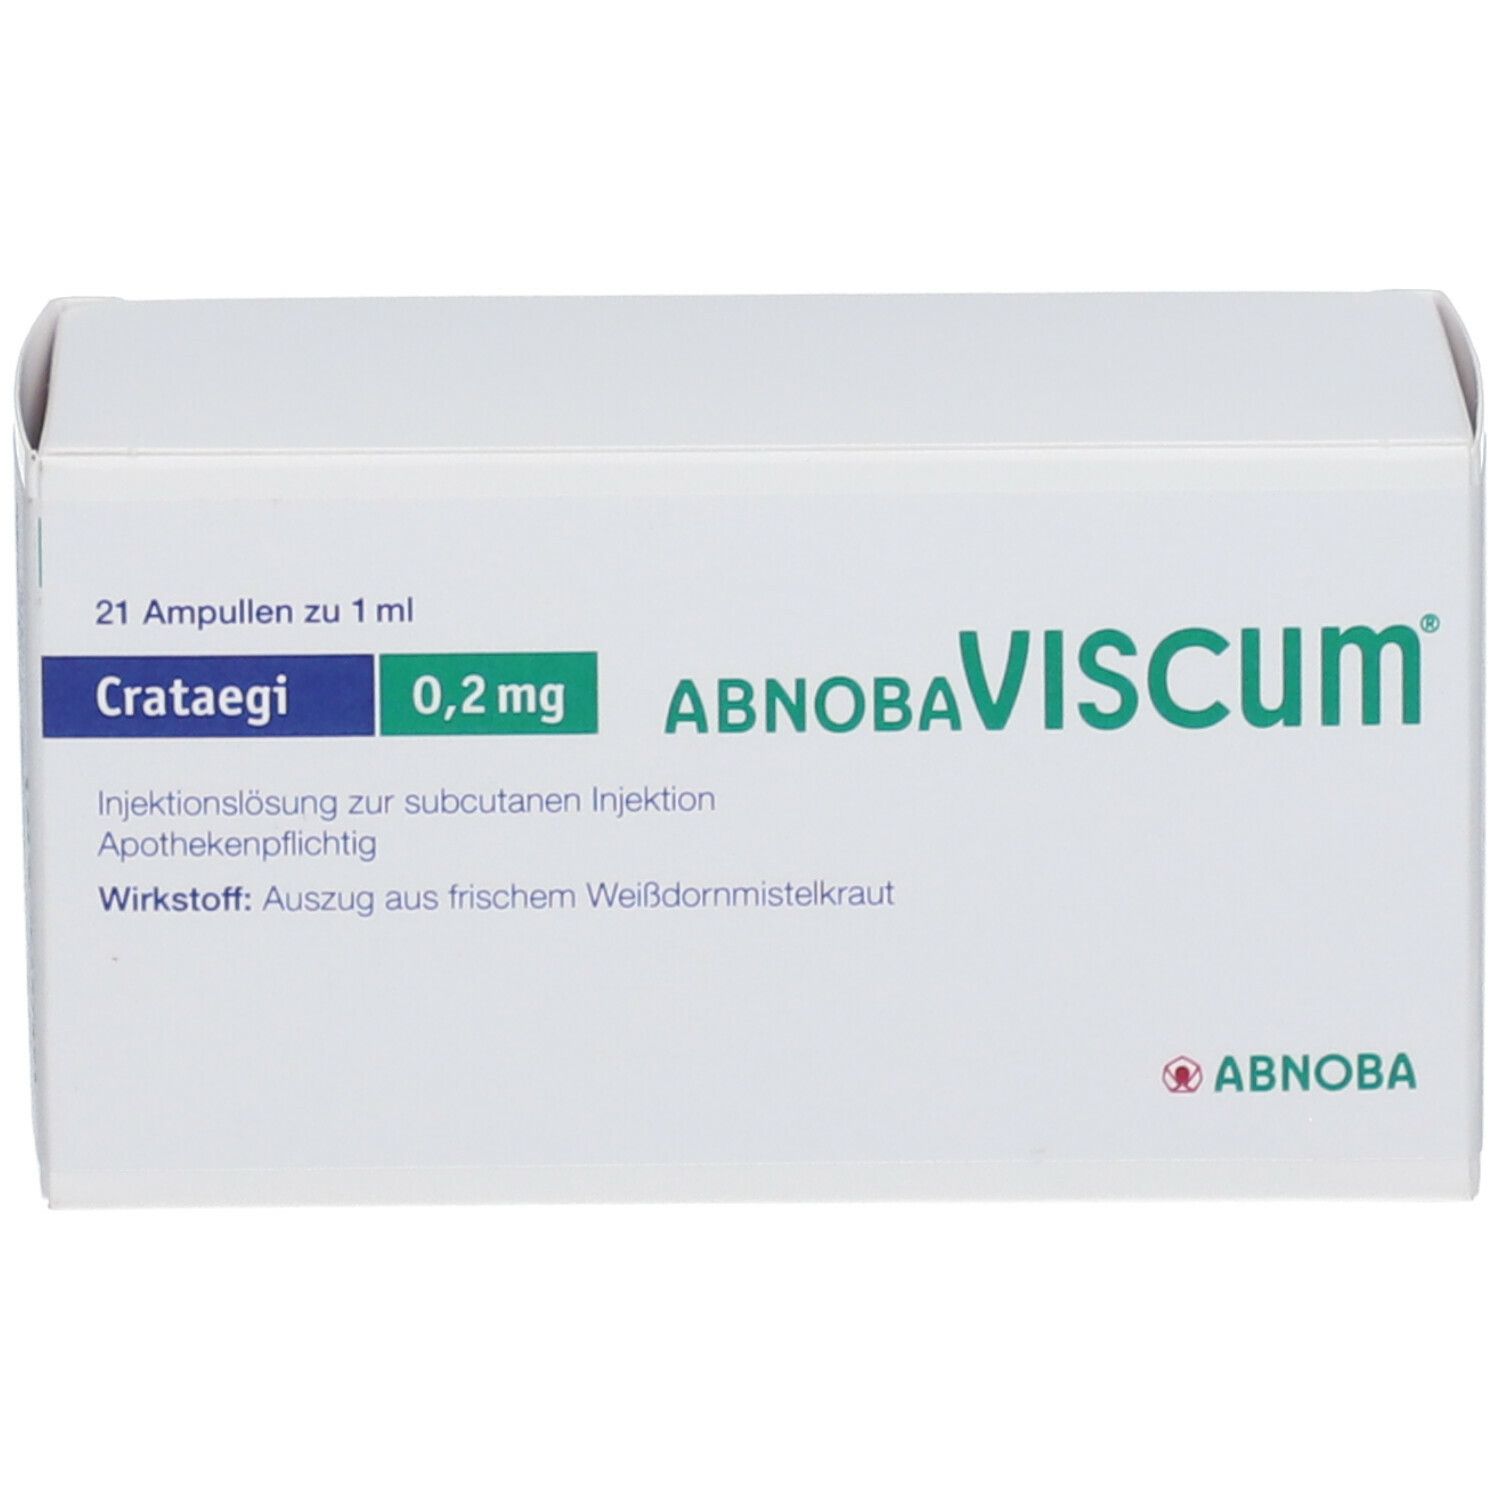 abnobaVISCUM® Crataegi 0,2 mg Ampullen